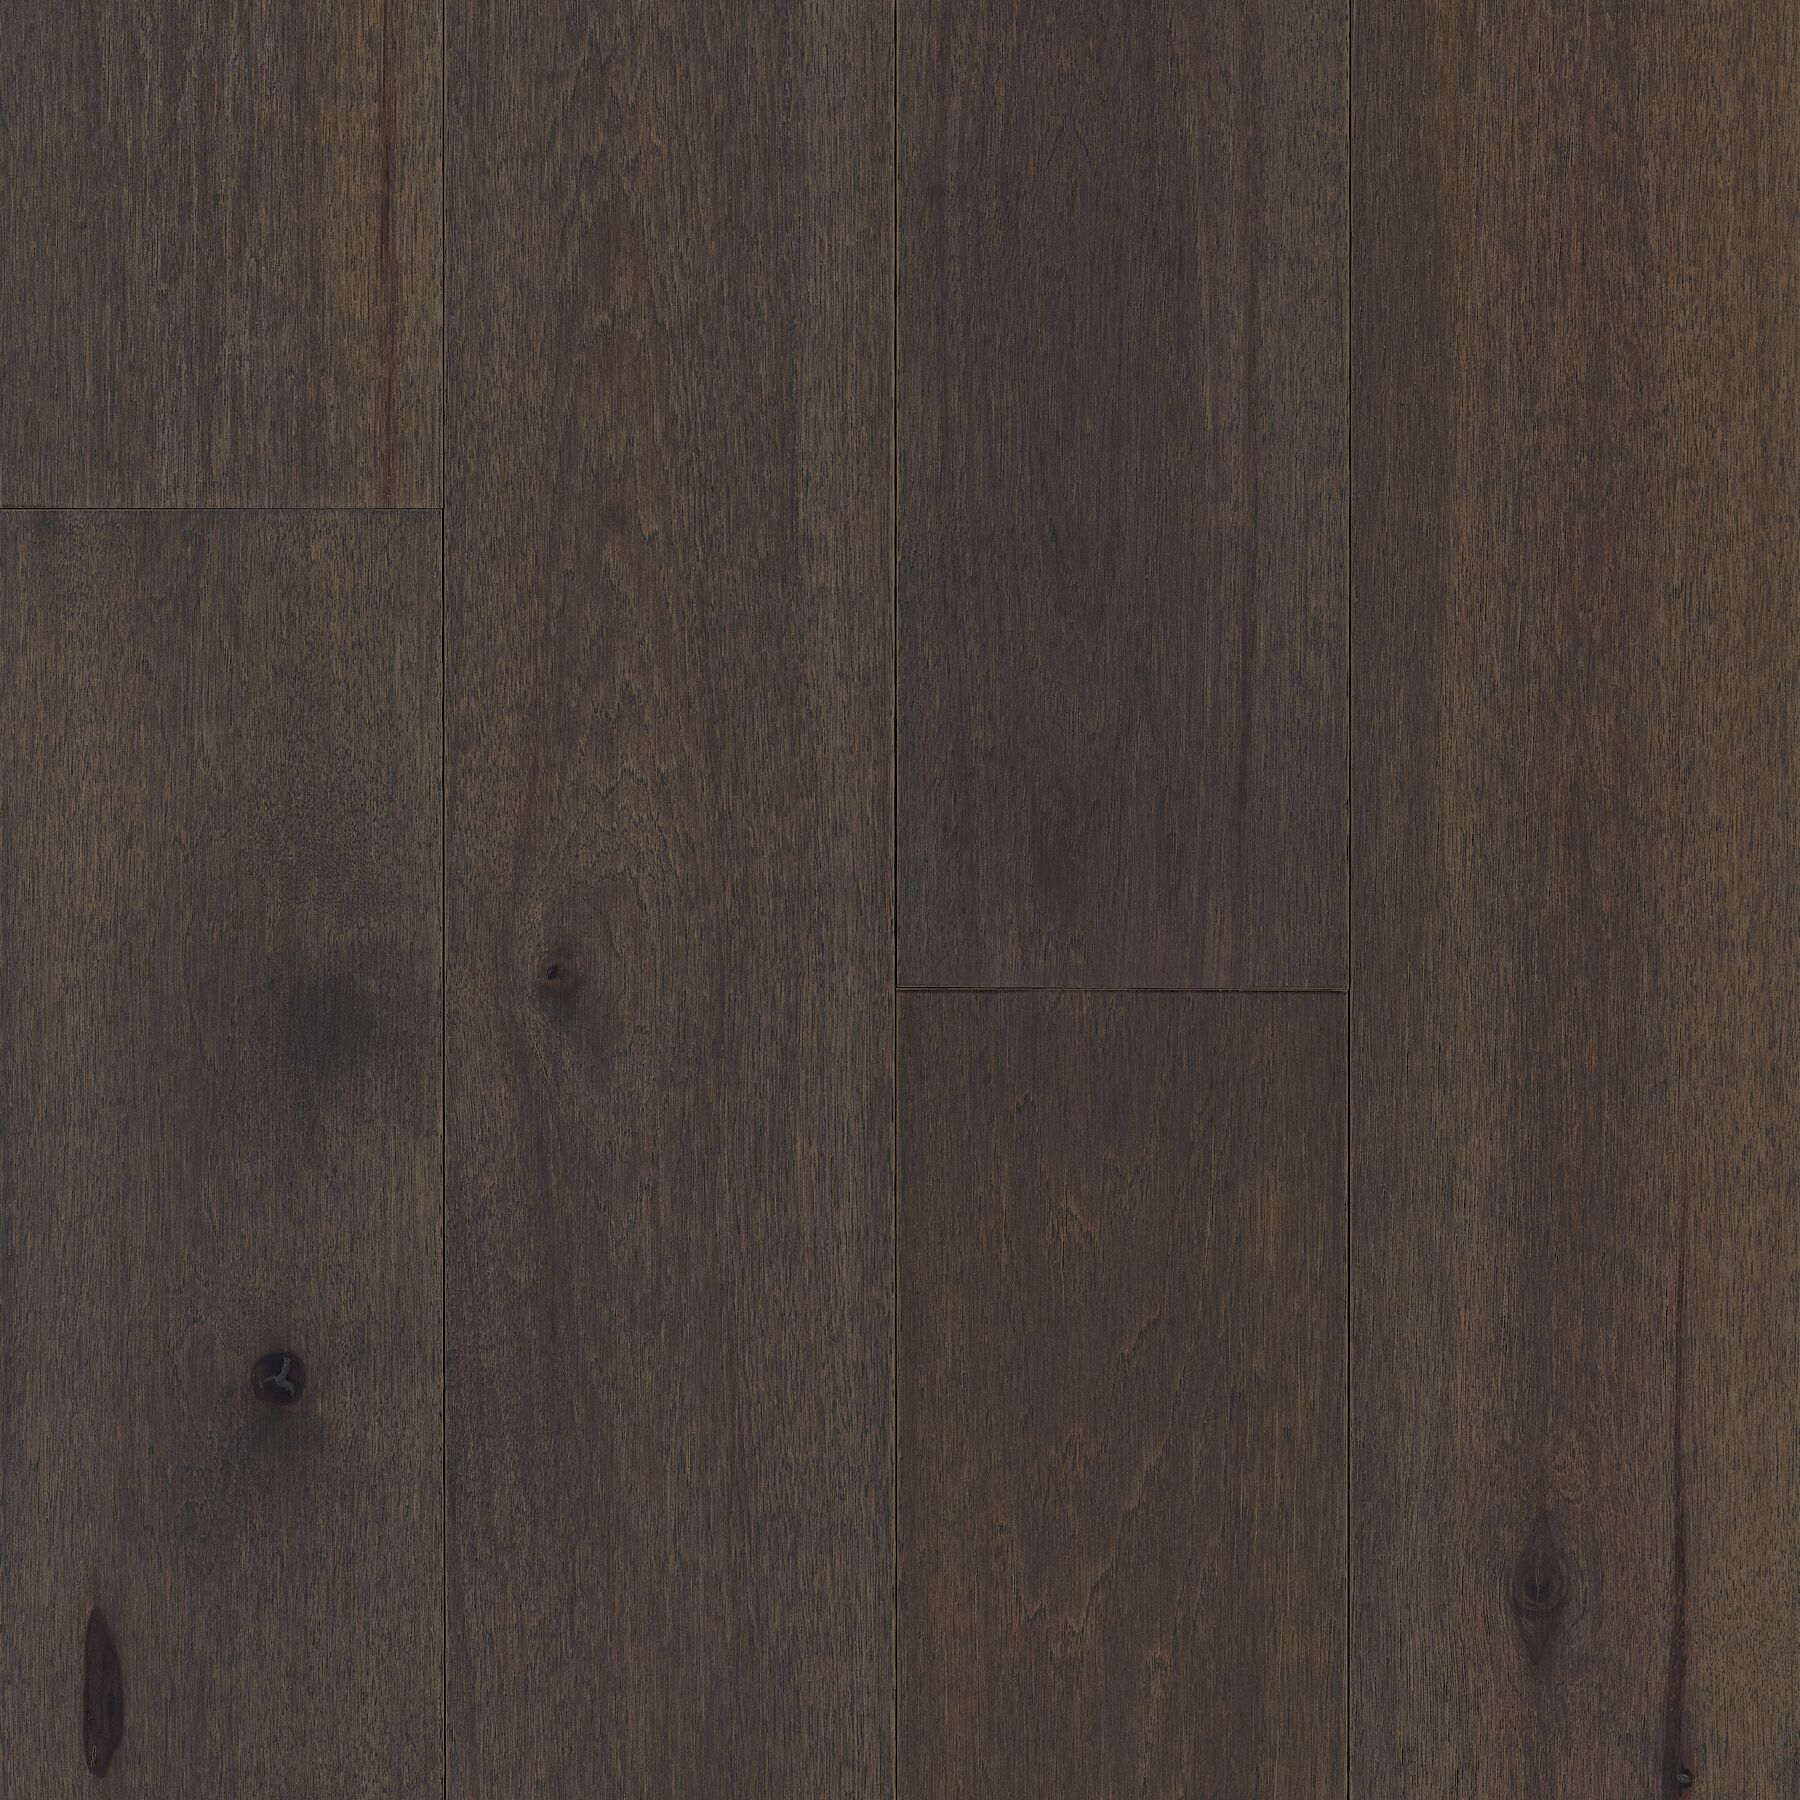 Bernese Dogwood Dog Proof Hardwood Floors with hardened wood